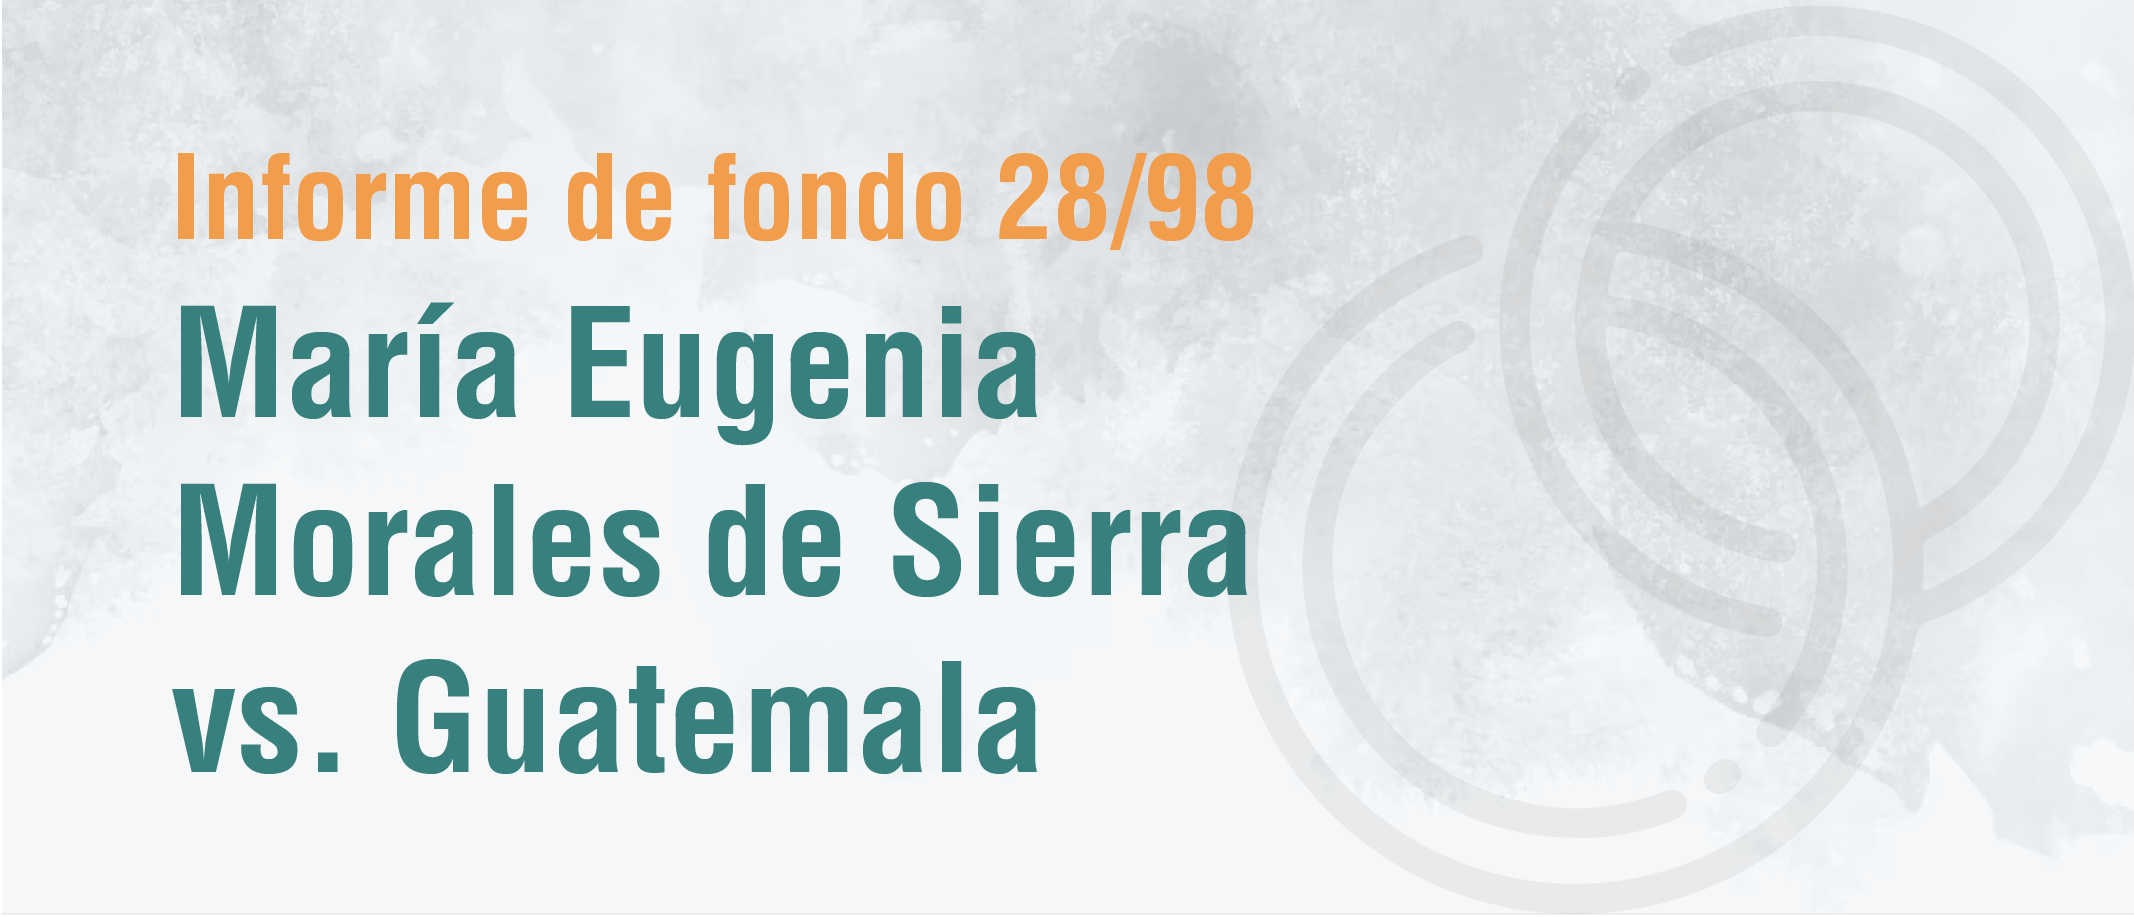 Informe de Admisibilidad No. 28/98 de María Eugenia Morales de Sierra vs. Guatemala sobre igualdad de derechos en el matrimonio